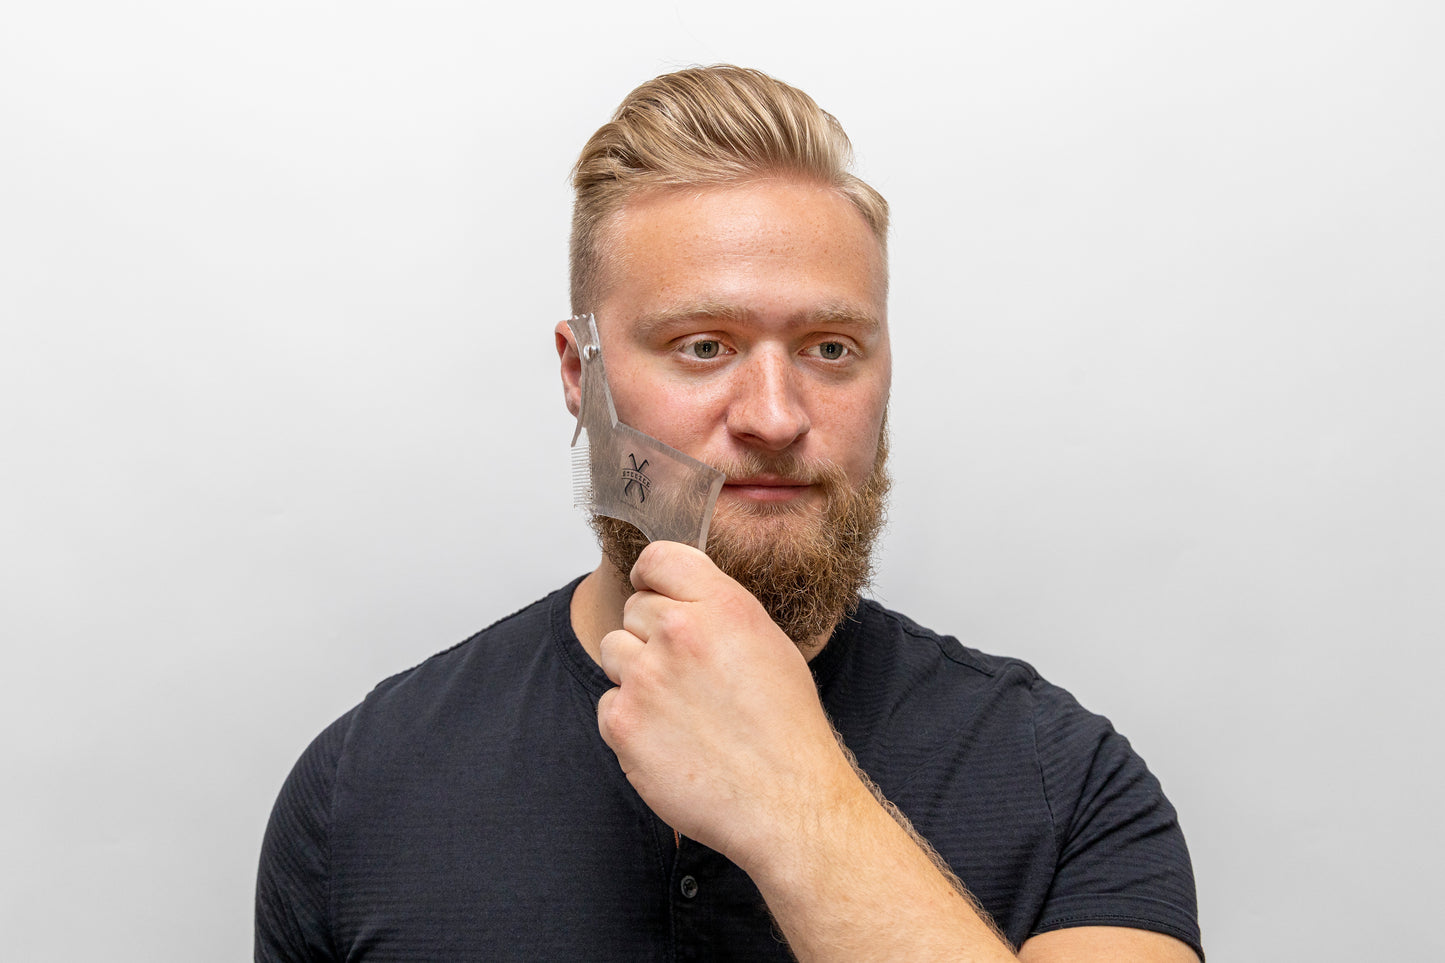 The Beard Boss Beard Shaping & Styling Tool